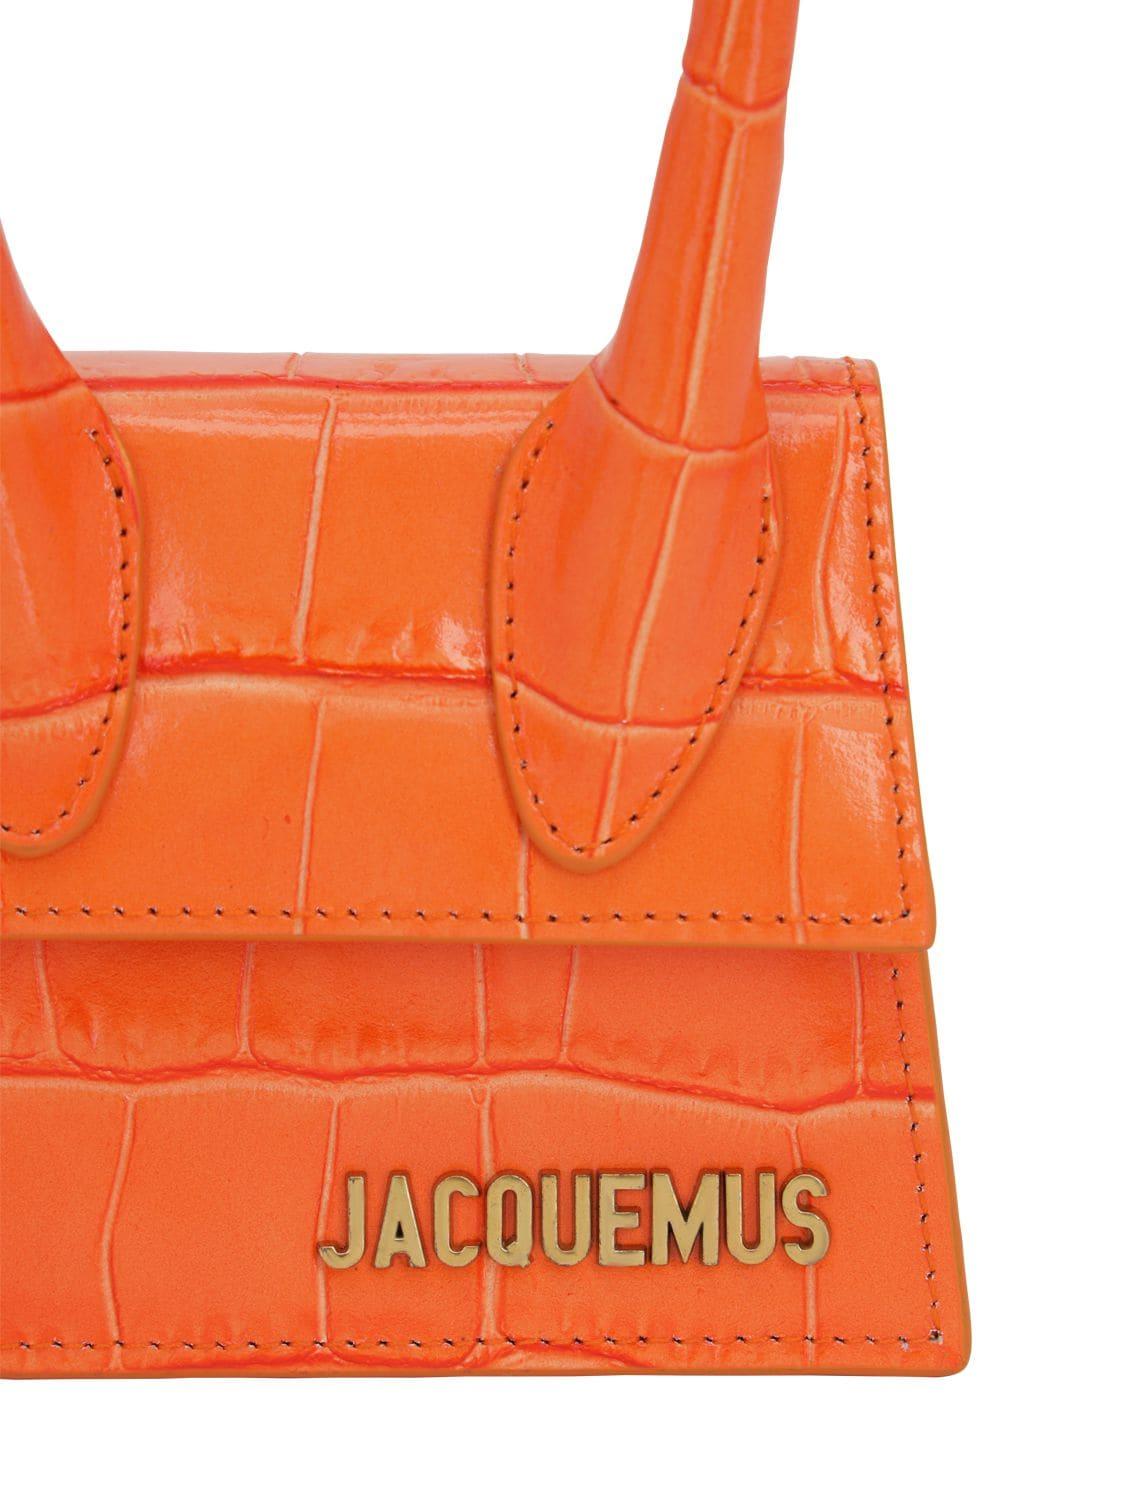 Jacquemus Le Chiquito Croc Print Leather Bag in Orange | Lyst